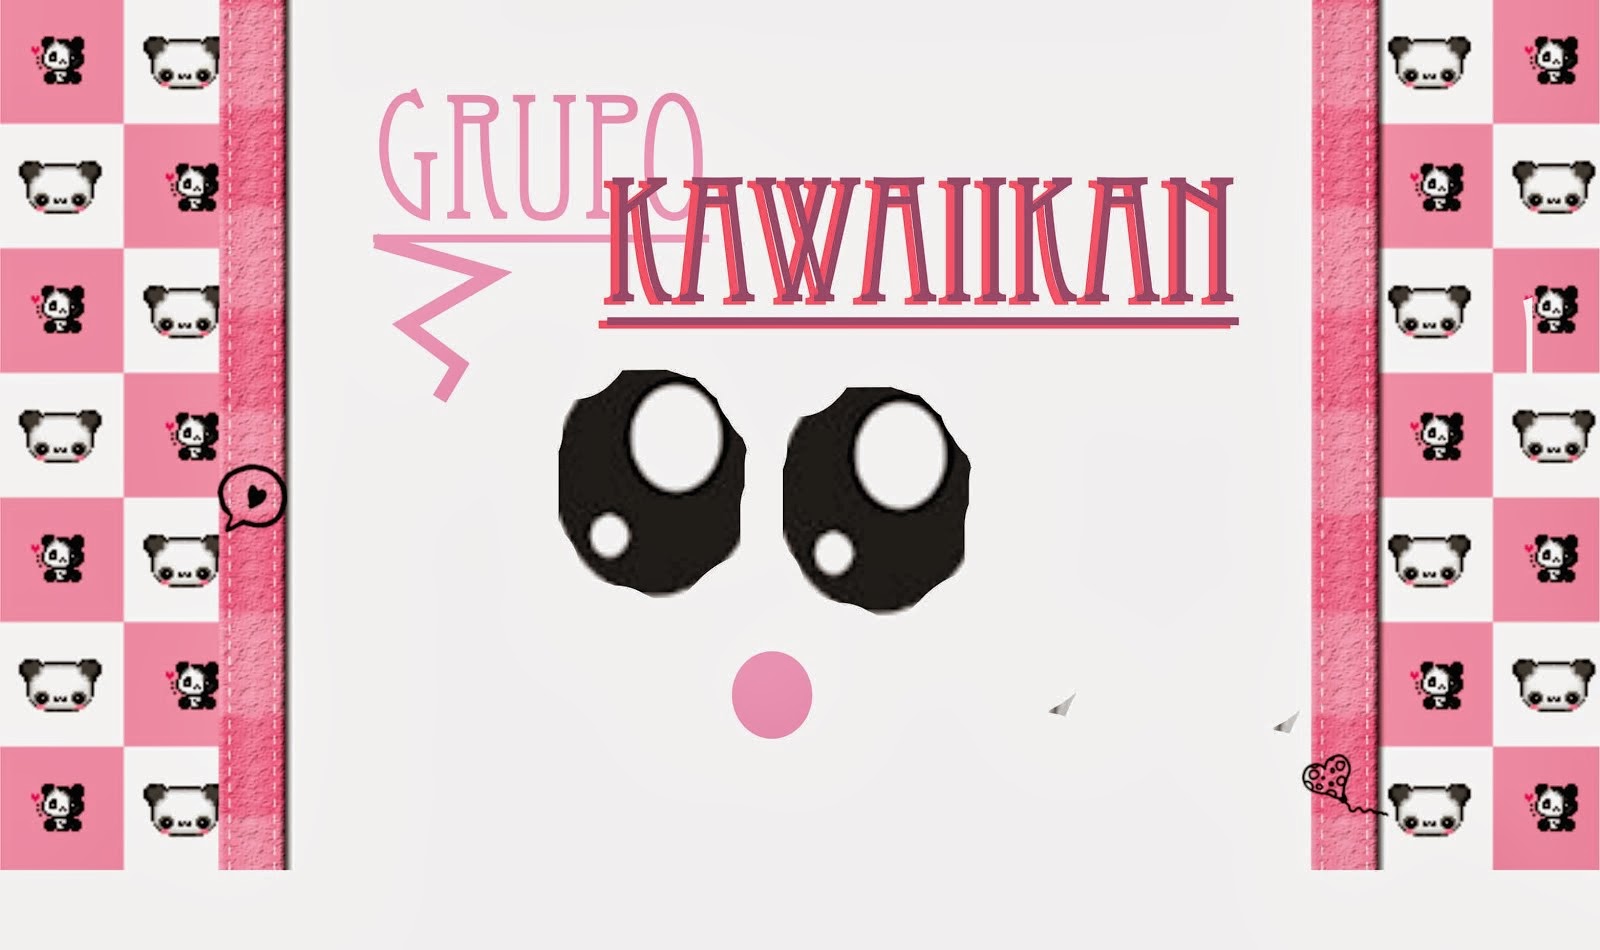 Grupo Kawaiikan